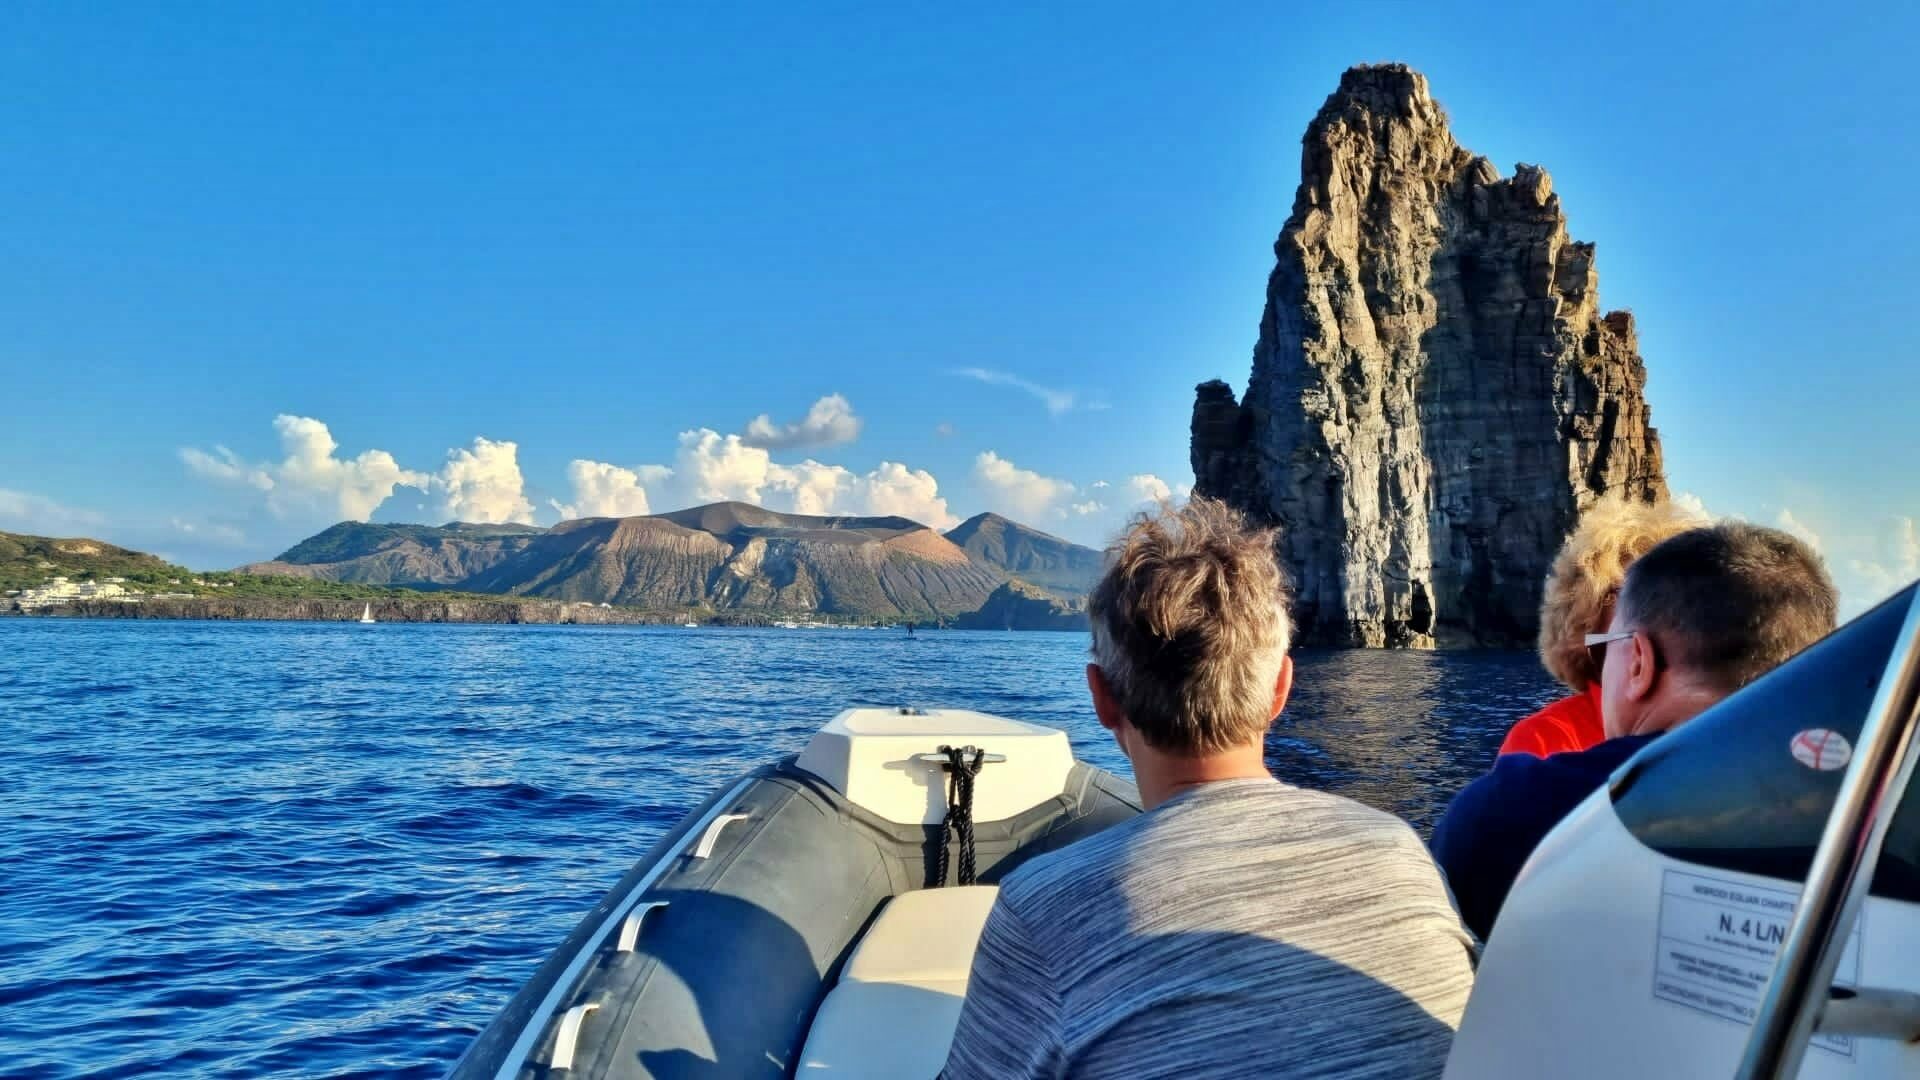 Persone a bordo di una barca partecipano a un escursione alle Isole Eolie e davanti a loro vedono un faraglione nel mare